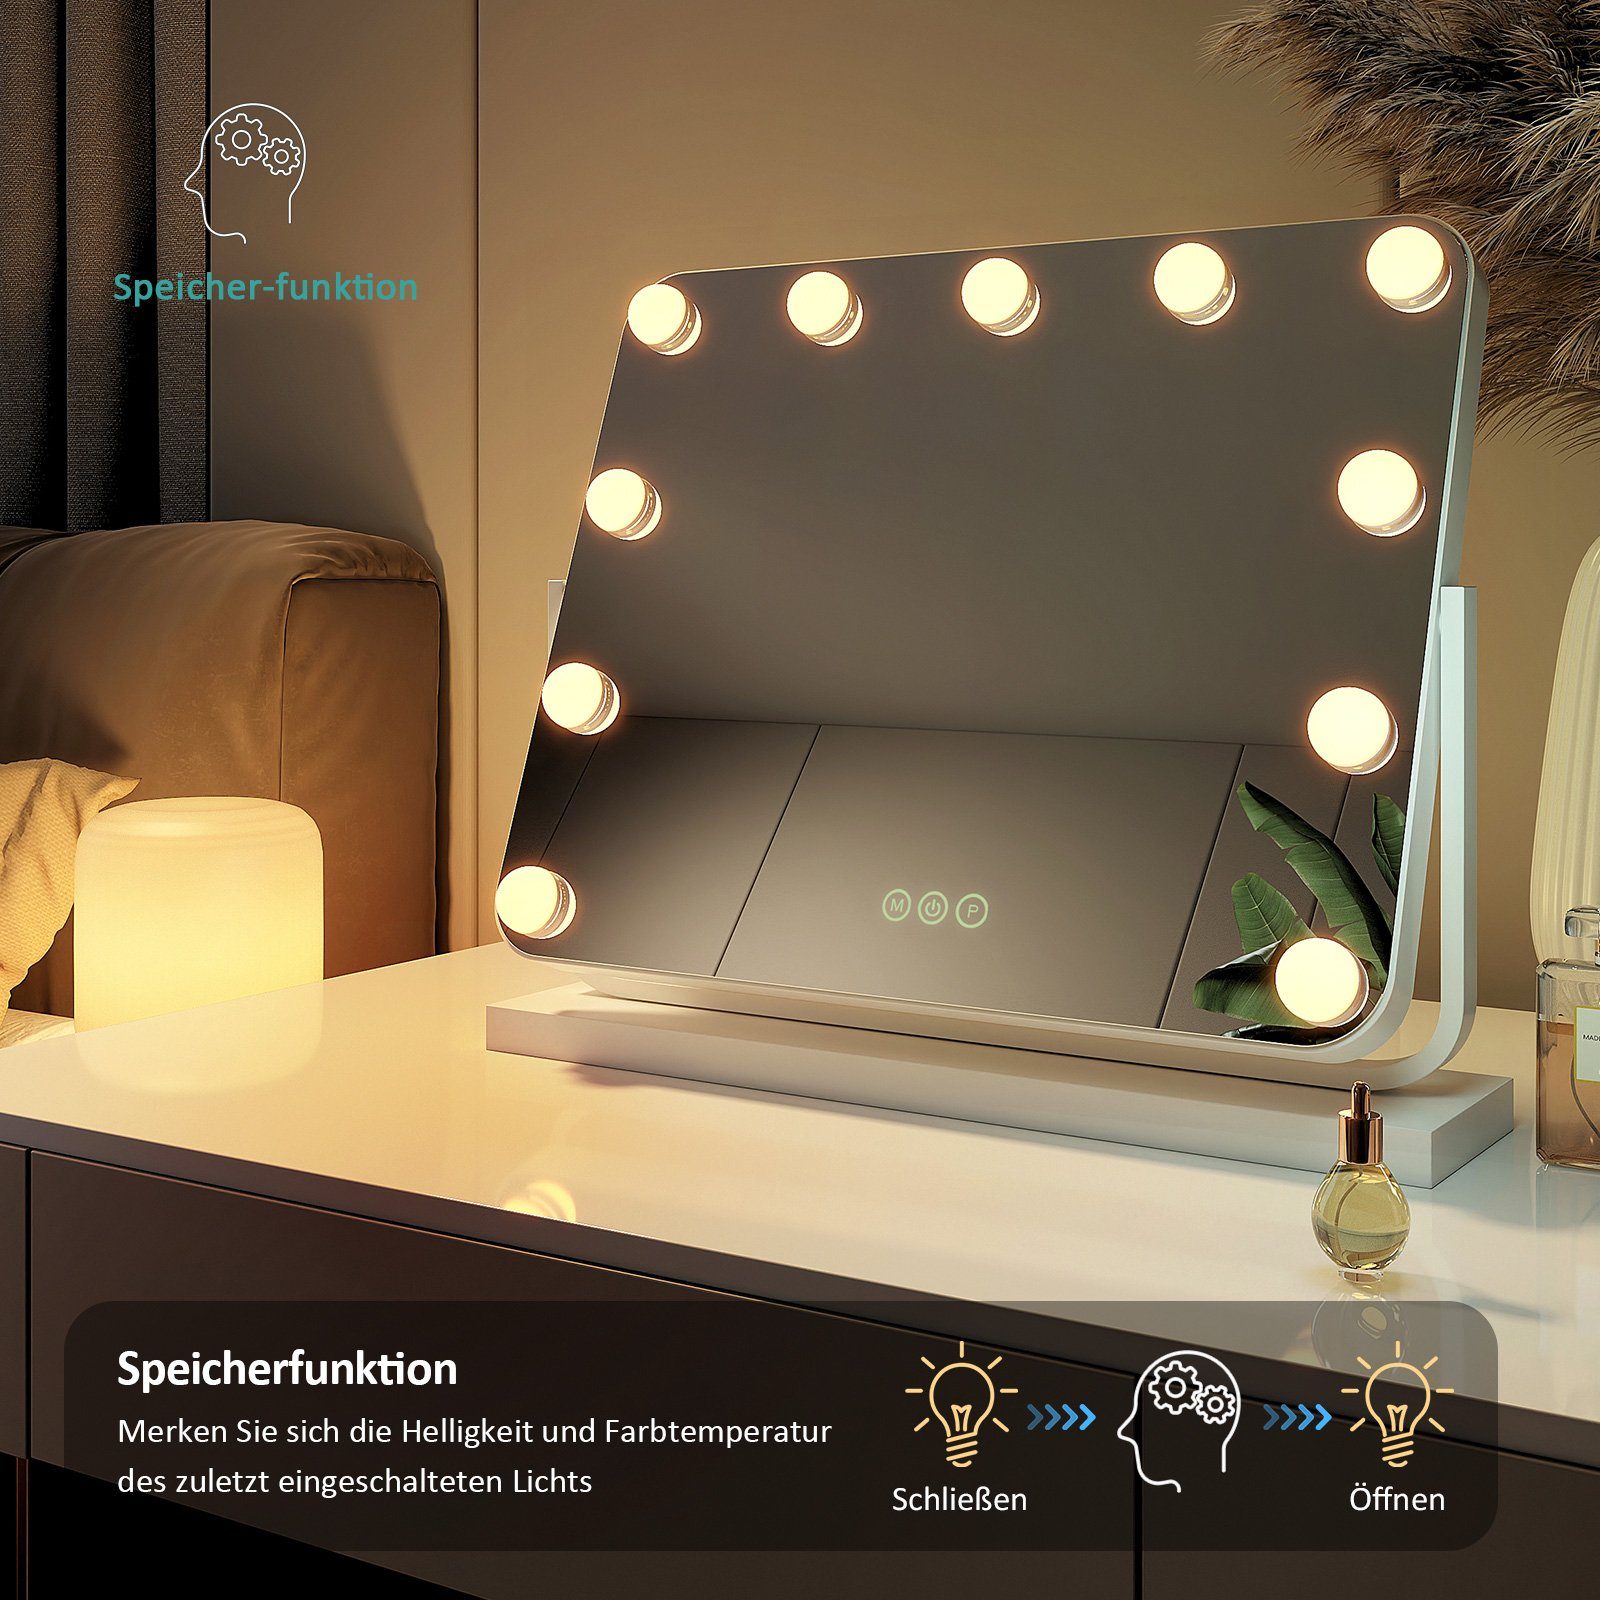 EMKE Kosmetikspiegel Hollywood Spiegel mit x Tischspiegel, ° Vergrößerungsspiegel Weiß 3 Beleuchtung Drehbar Licht,Dimmbar,Speicherfunktion,7 360 Farbe